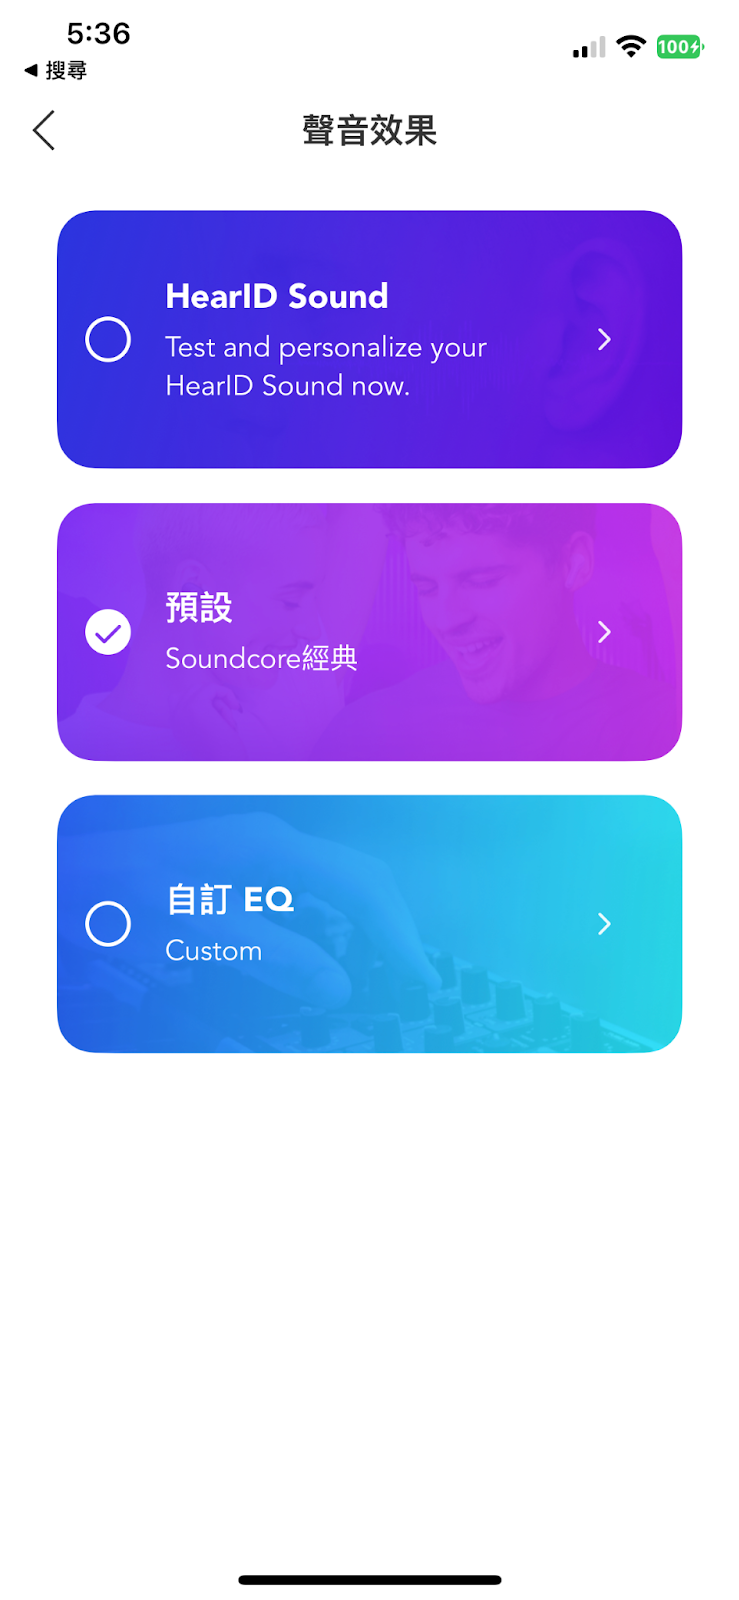 soundcore App